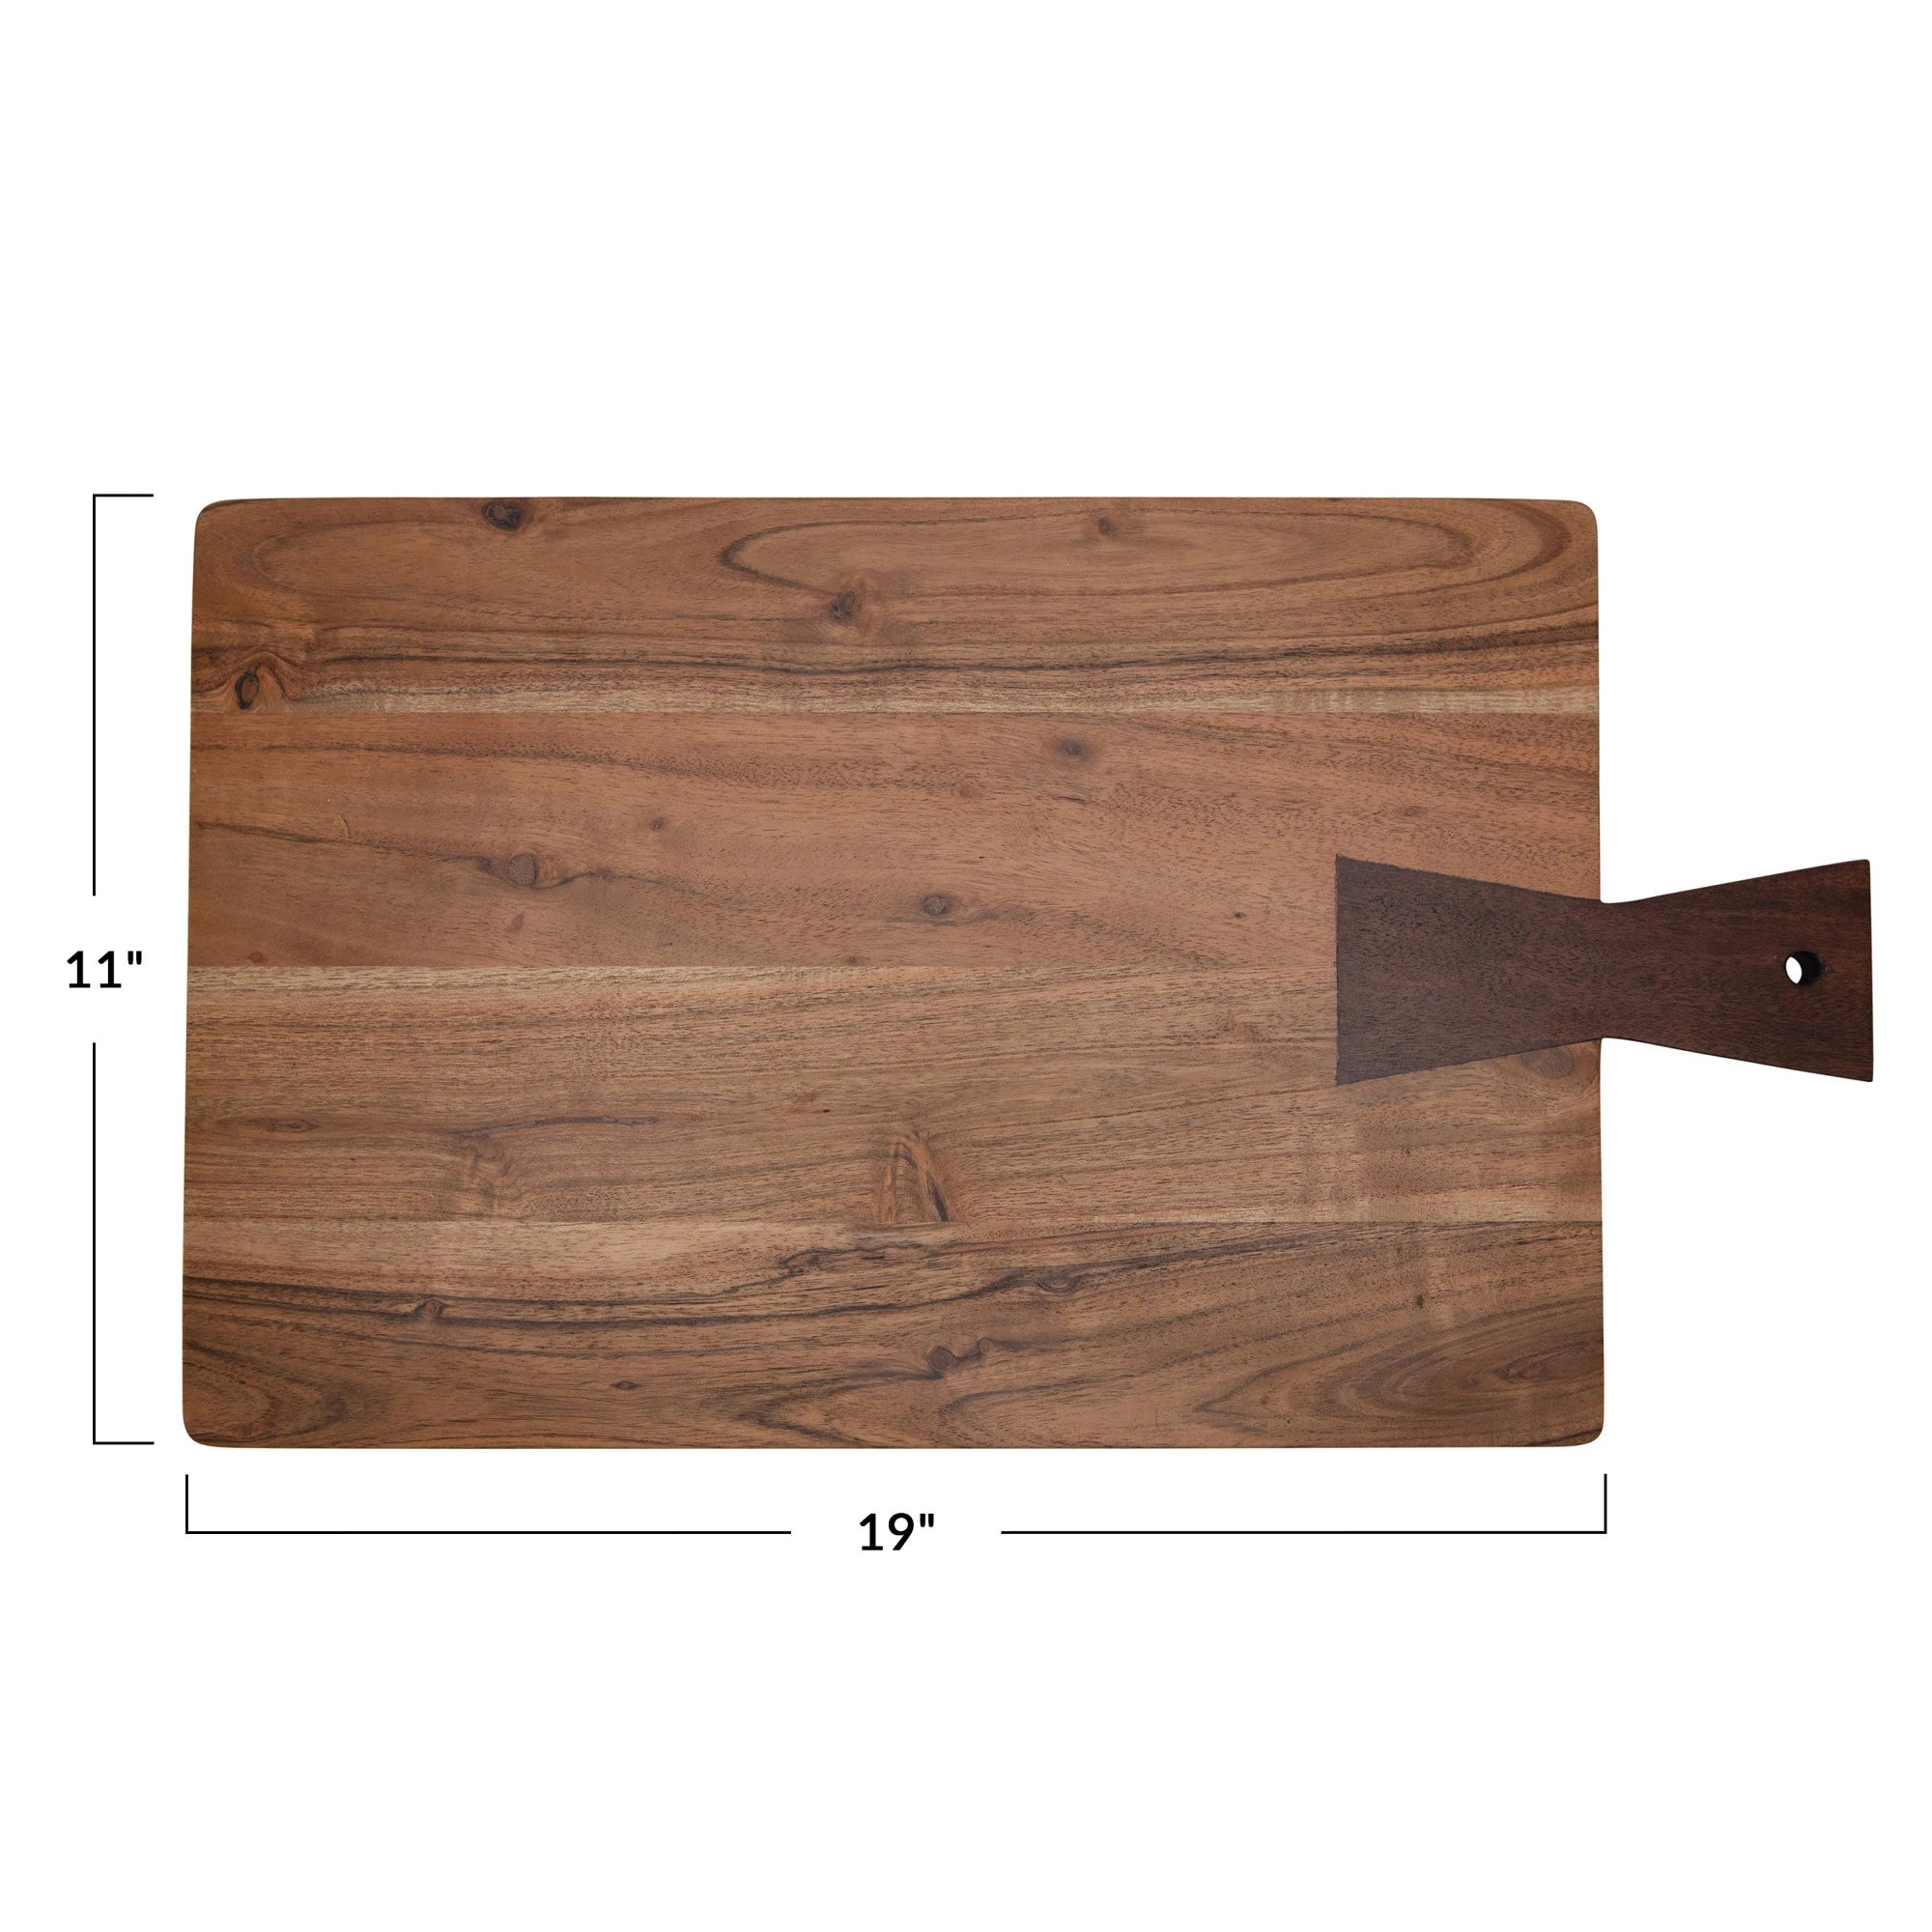 Wood Cutting Board w/ Handle